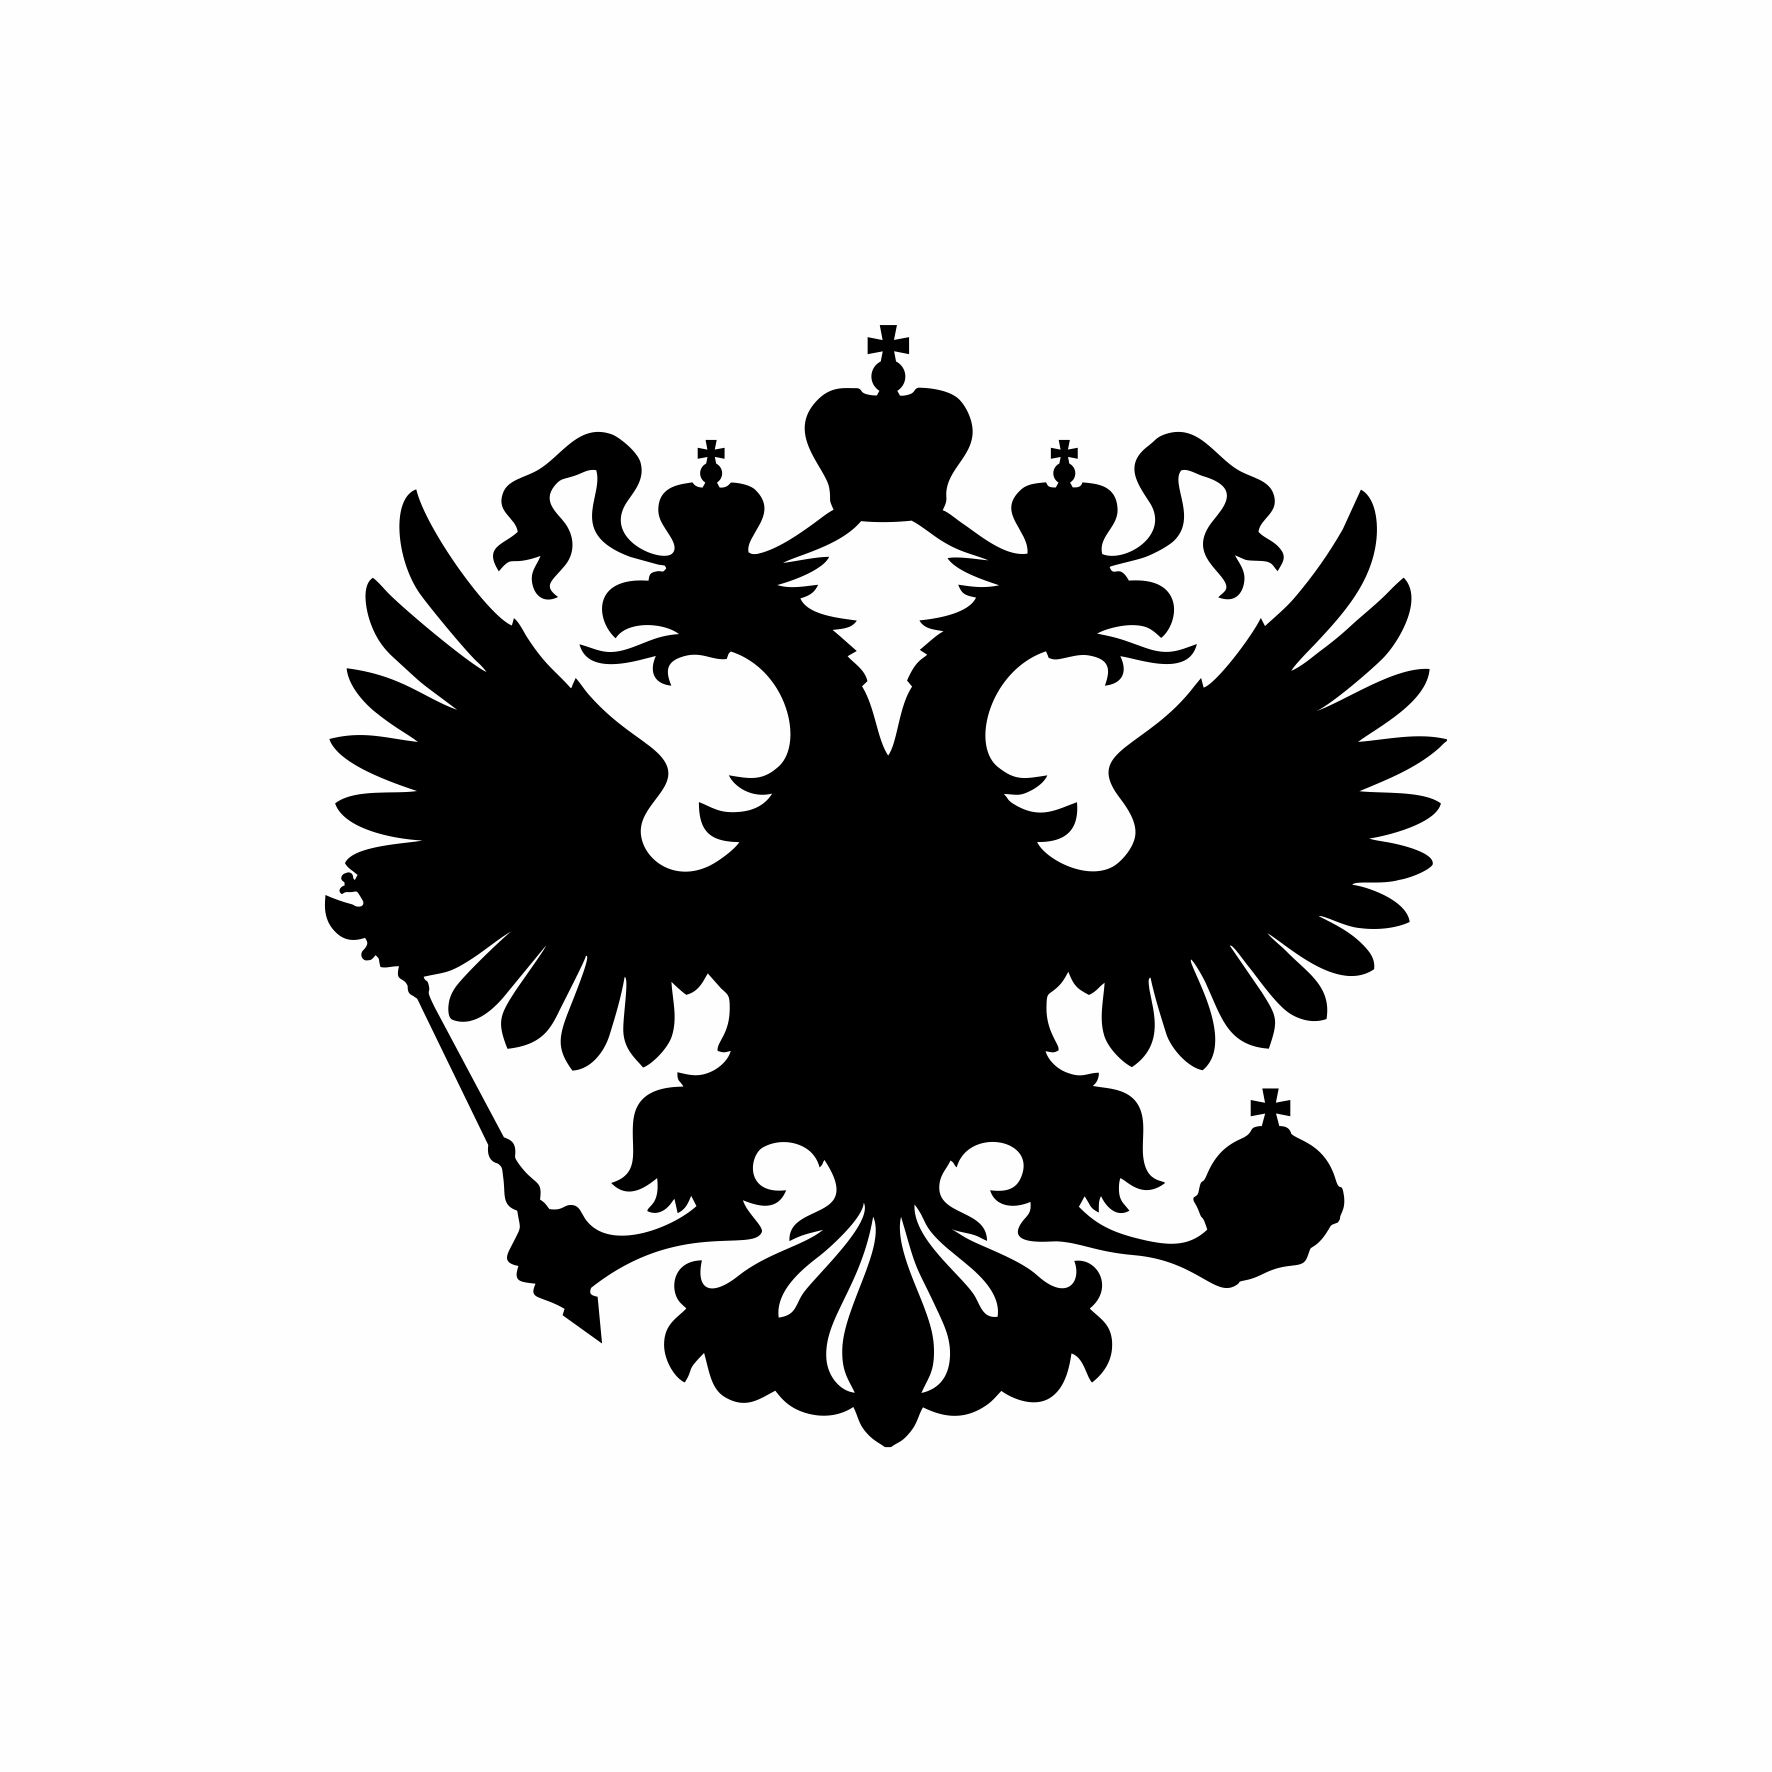 Герб России векторный